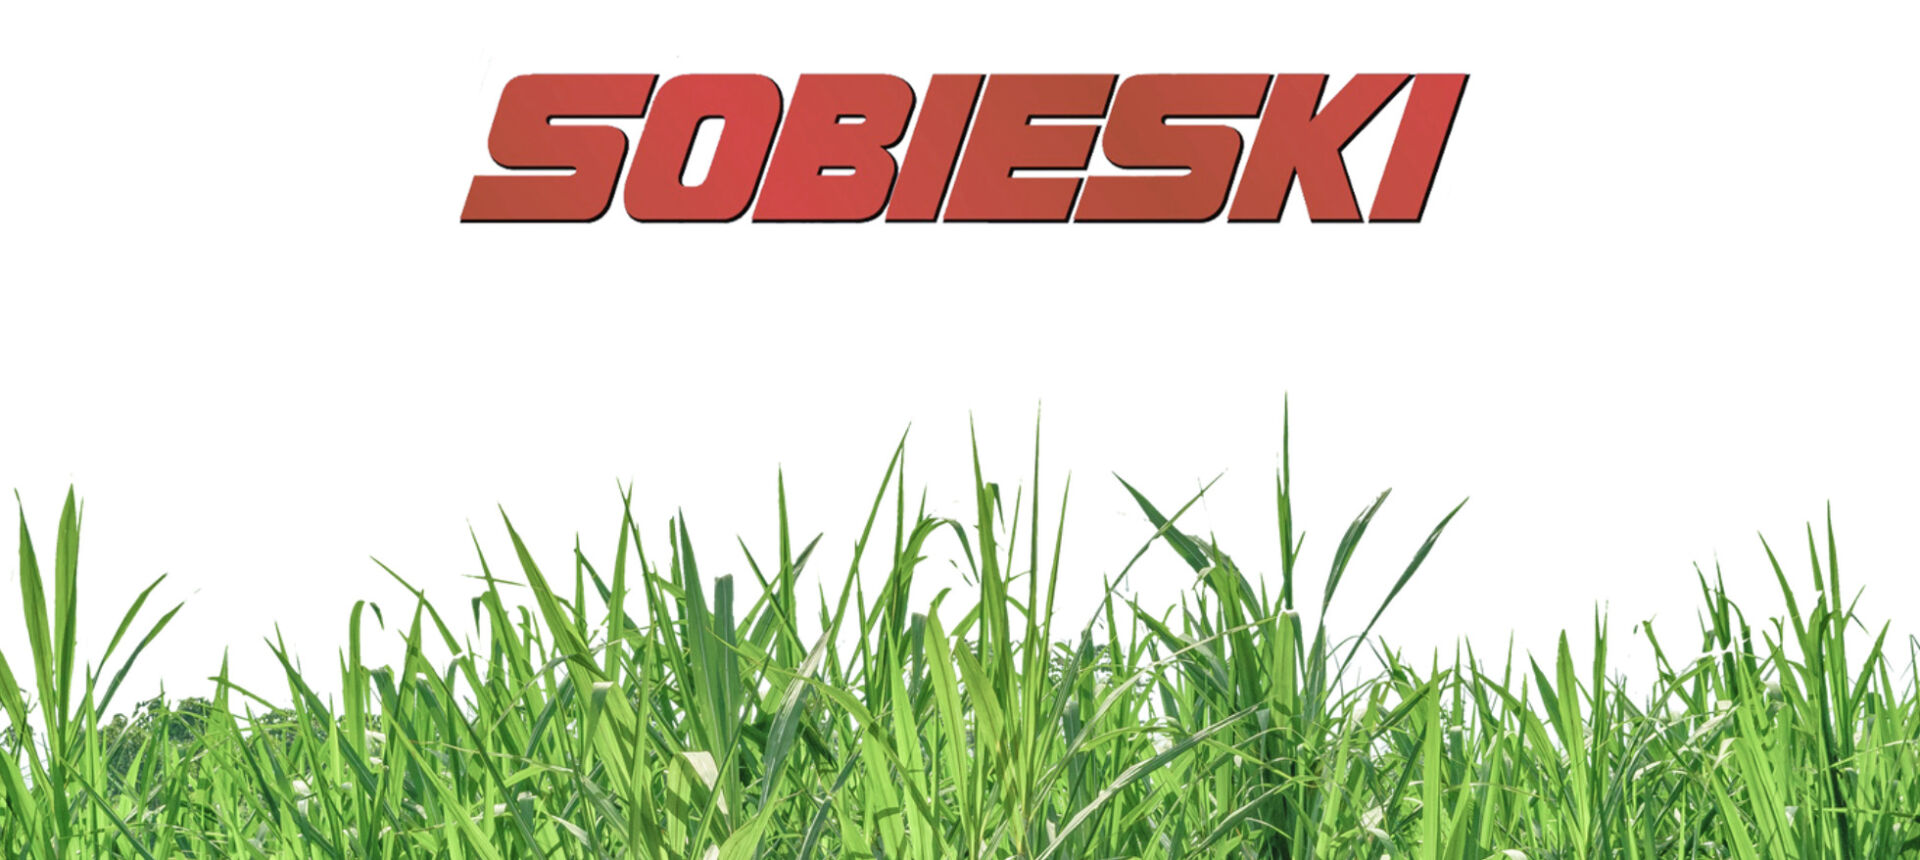 Sobieski logo